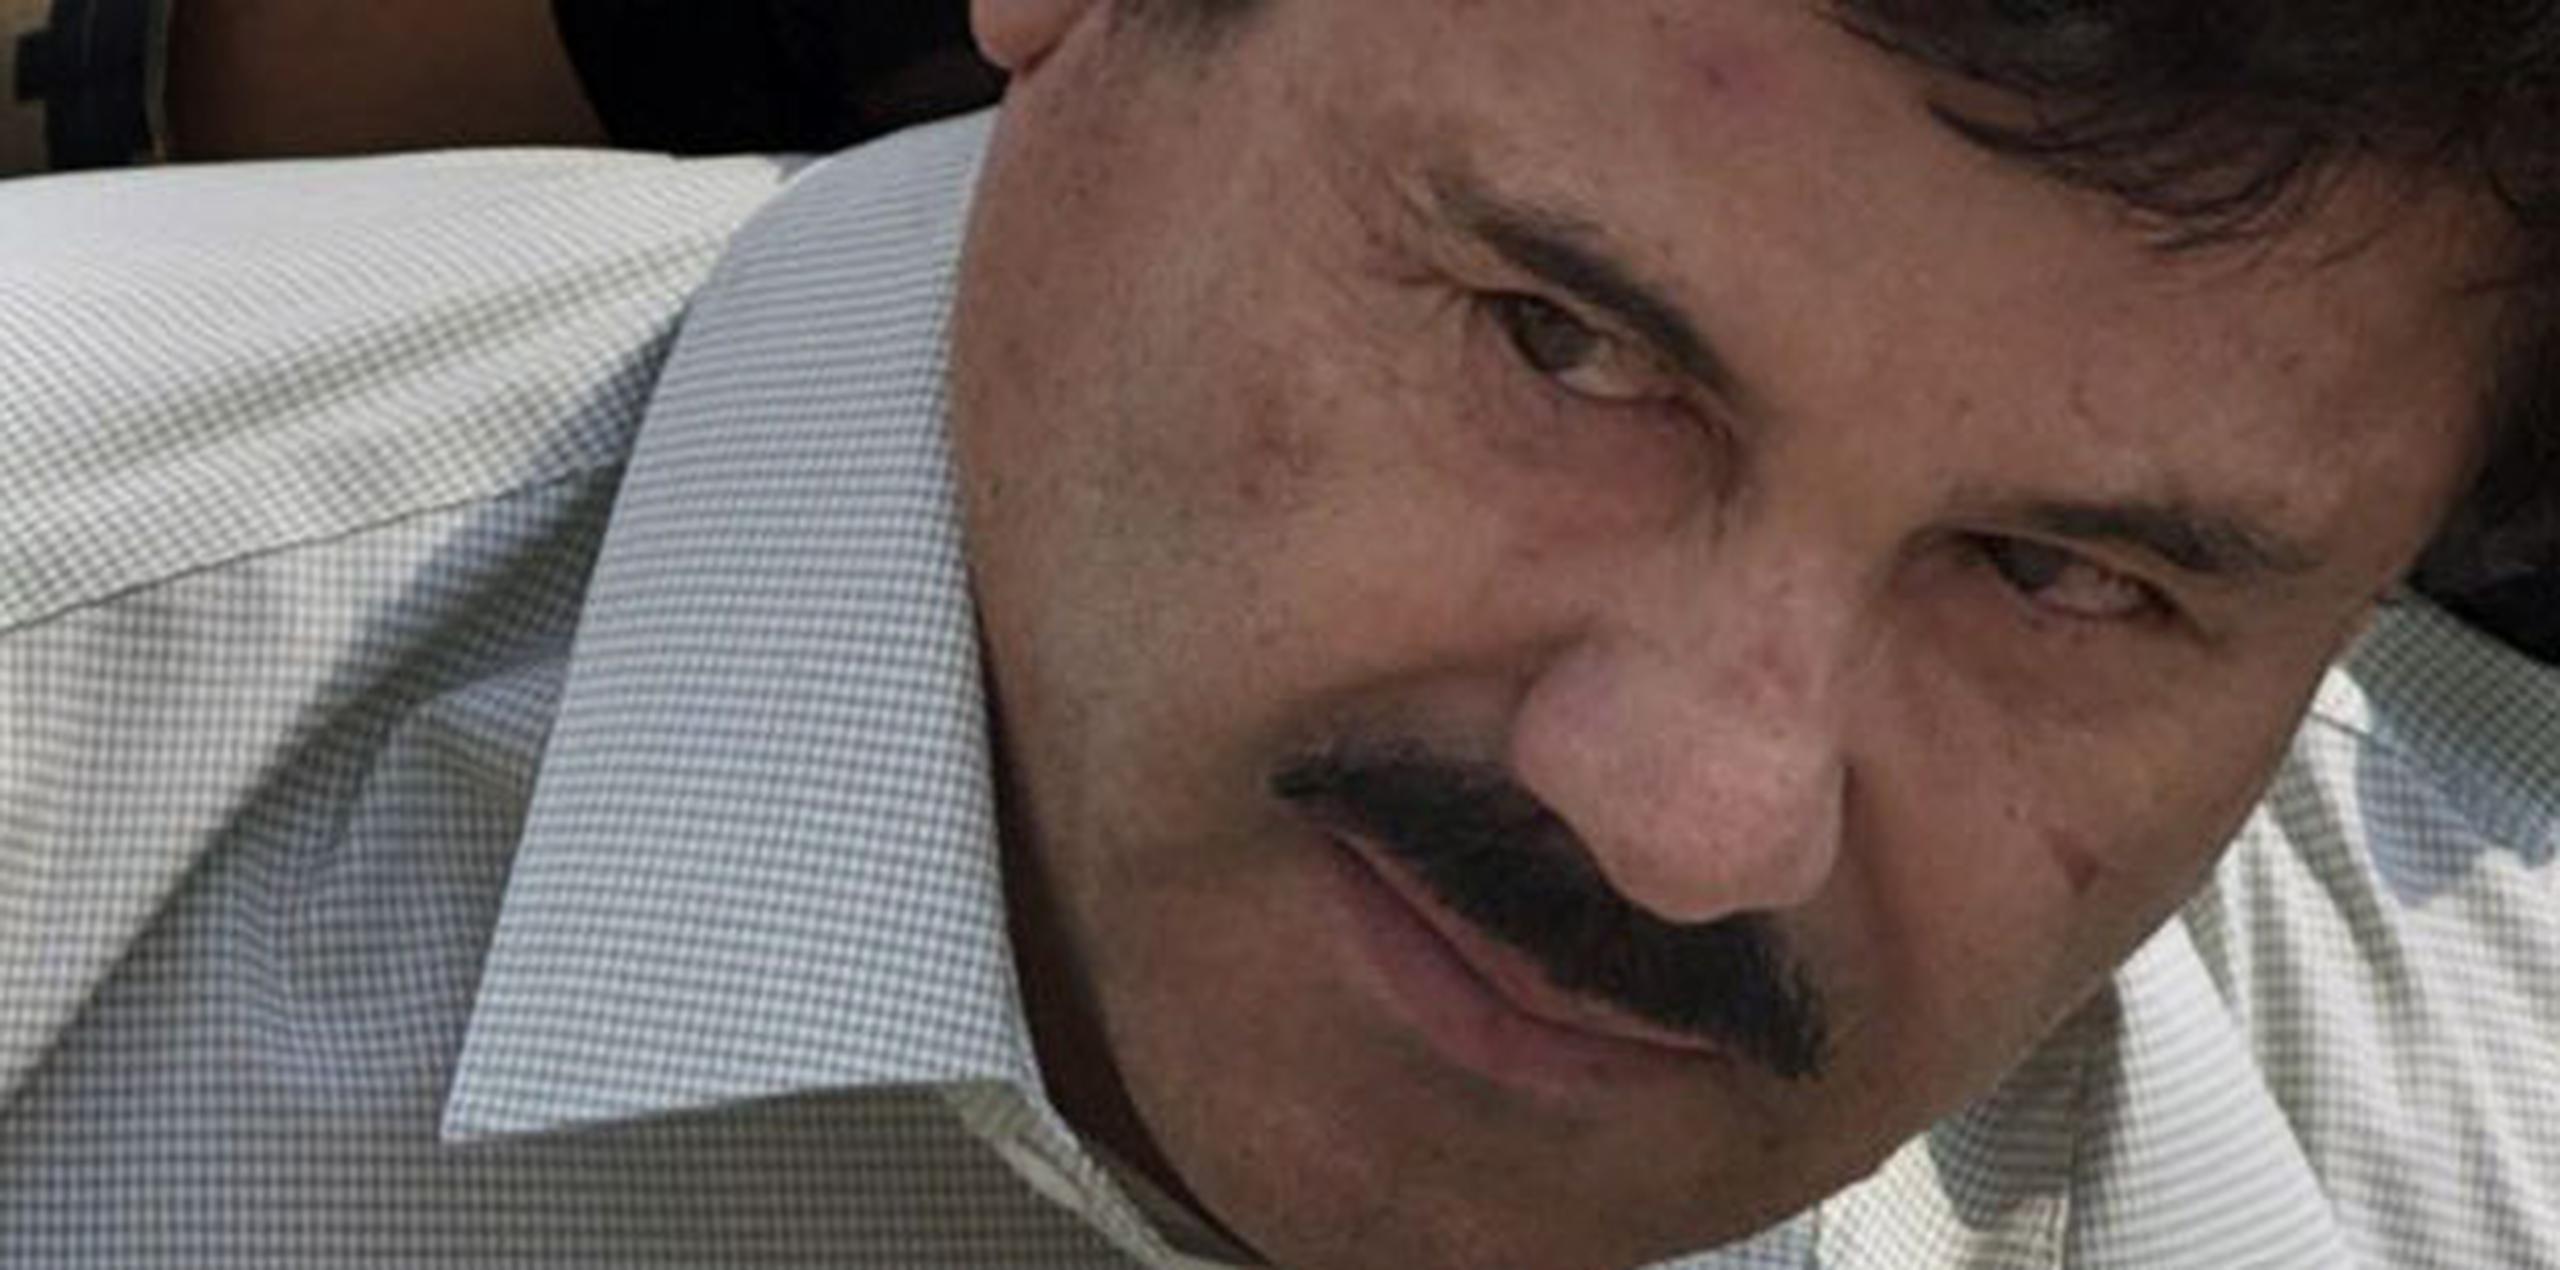 Semanas atrás el gobierno mexicano informó que Guzmán había huido de la más reciente operación de búsqueda pero resultó herido en una pierna y el rostro. (Archivo)